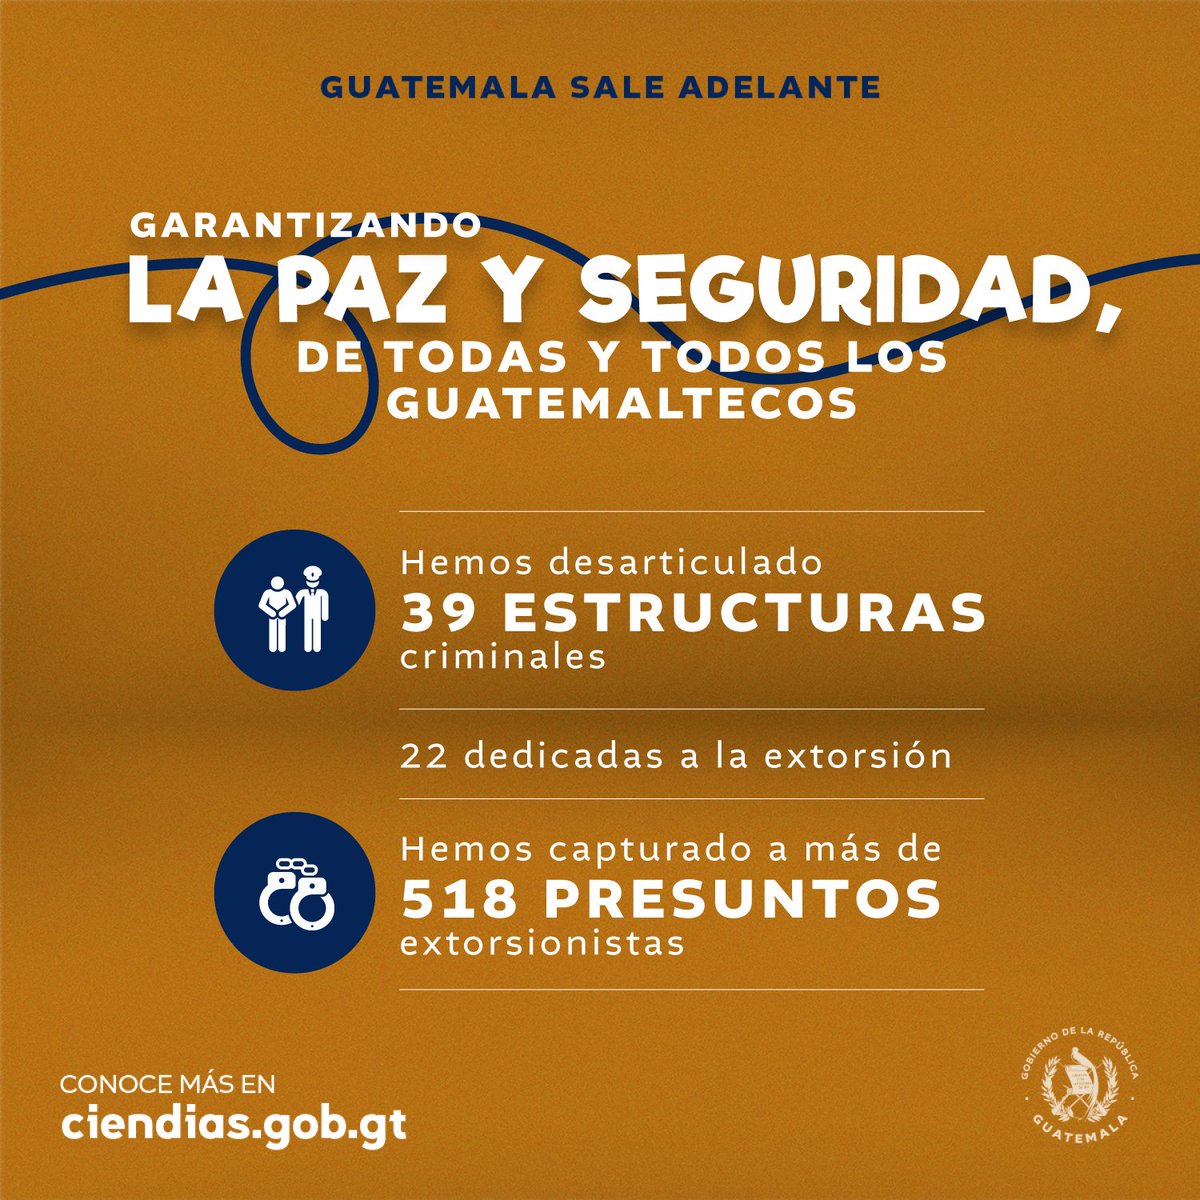 Hemos articulado esfuerzos y realizado operativos para combatir las extorsiones, especialmente en las áreas más afectadas por este delito. 💪 Seguiremos firmes para garantizar la seguridad de las familias. #GuatemalaSaleAdelante